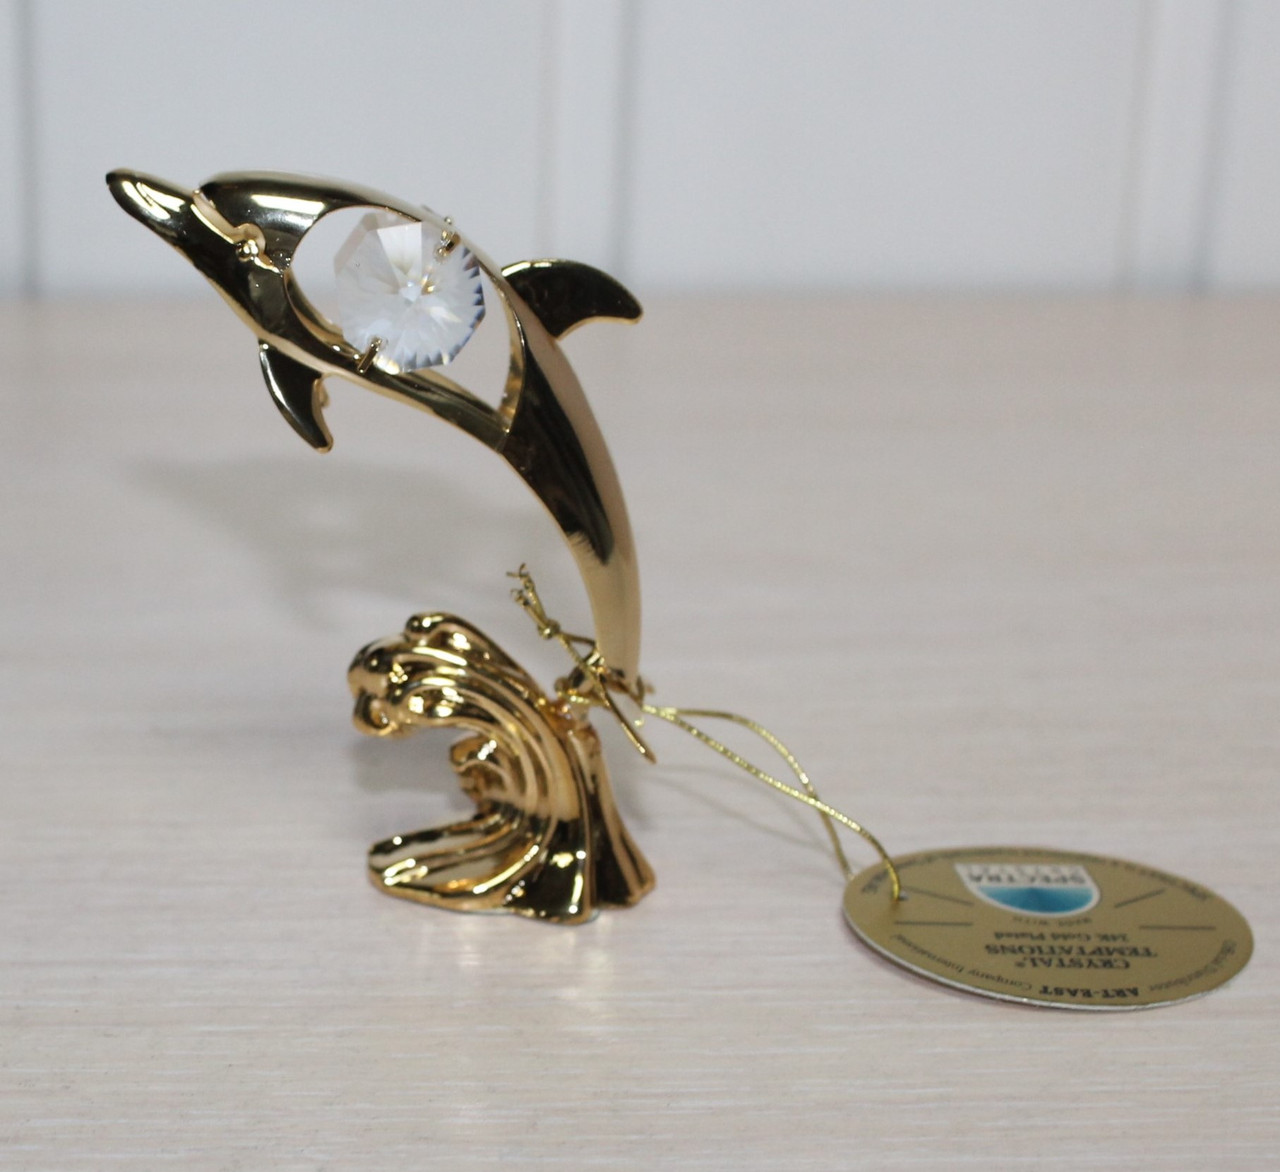 Позолочена фігурка з кристалами Сваровскі "Дельфін на хвилі" , фото 1